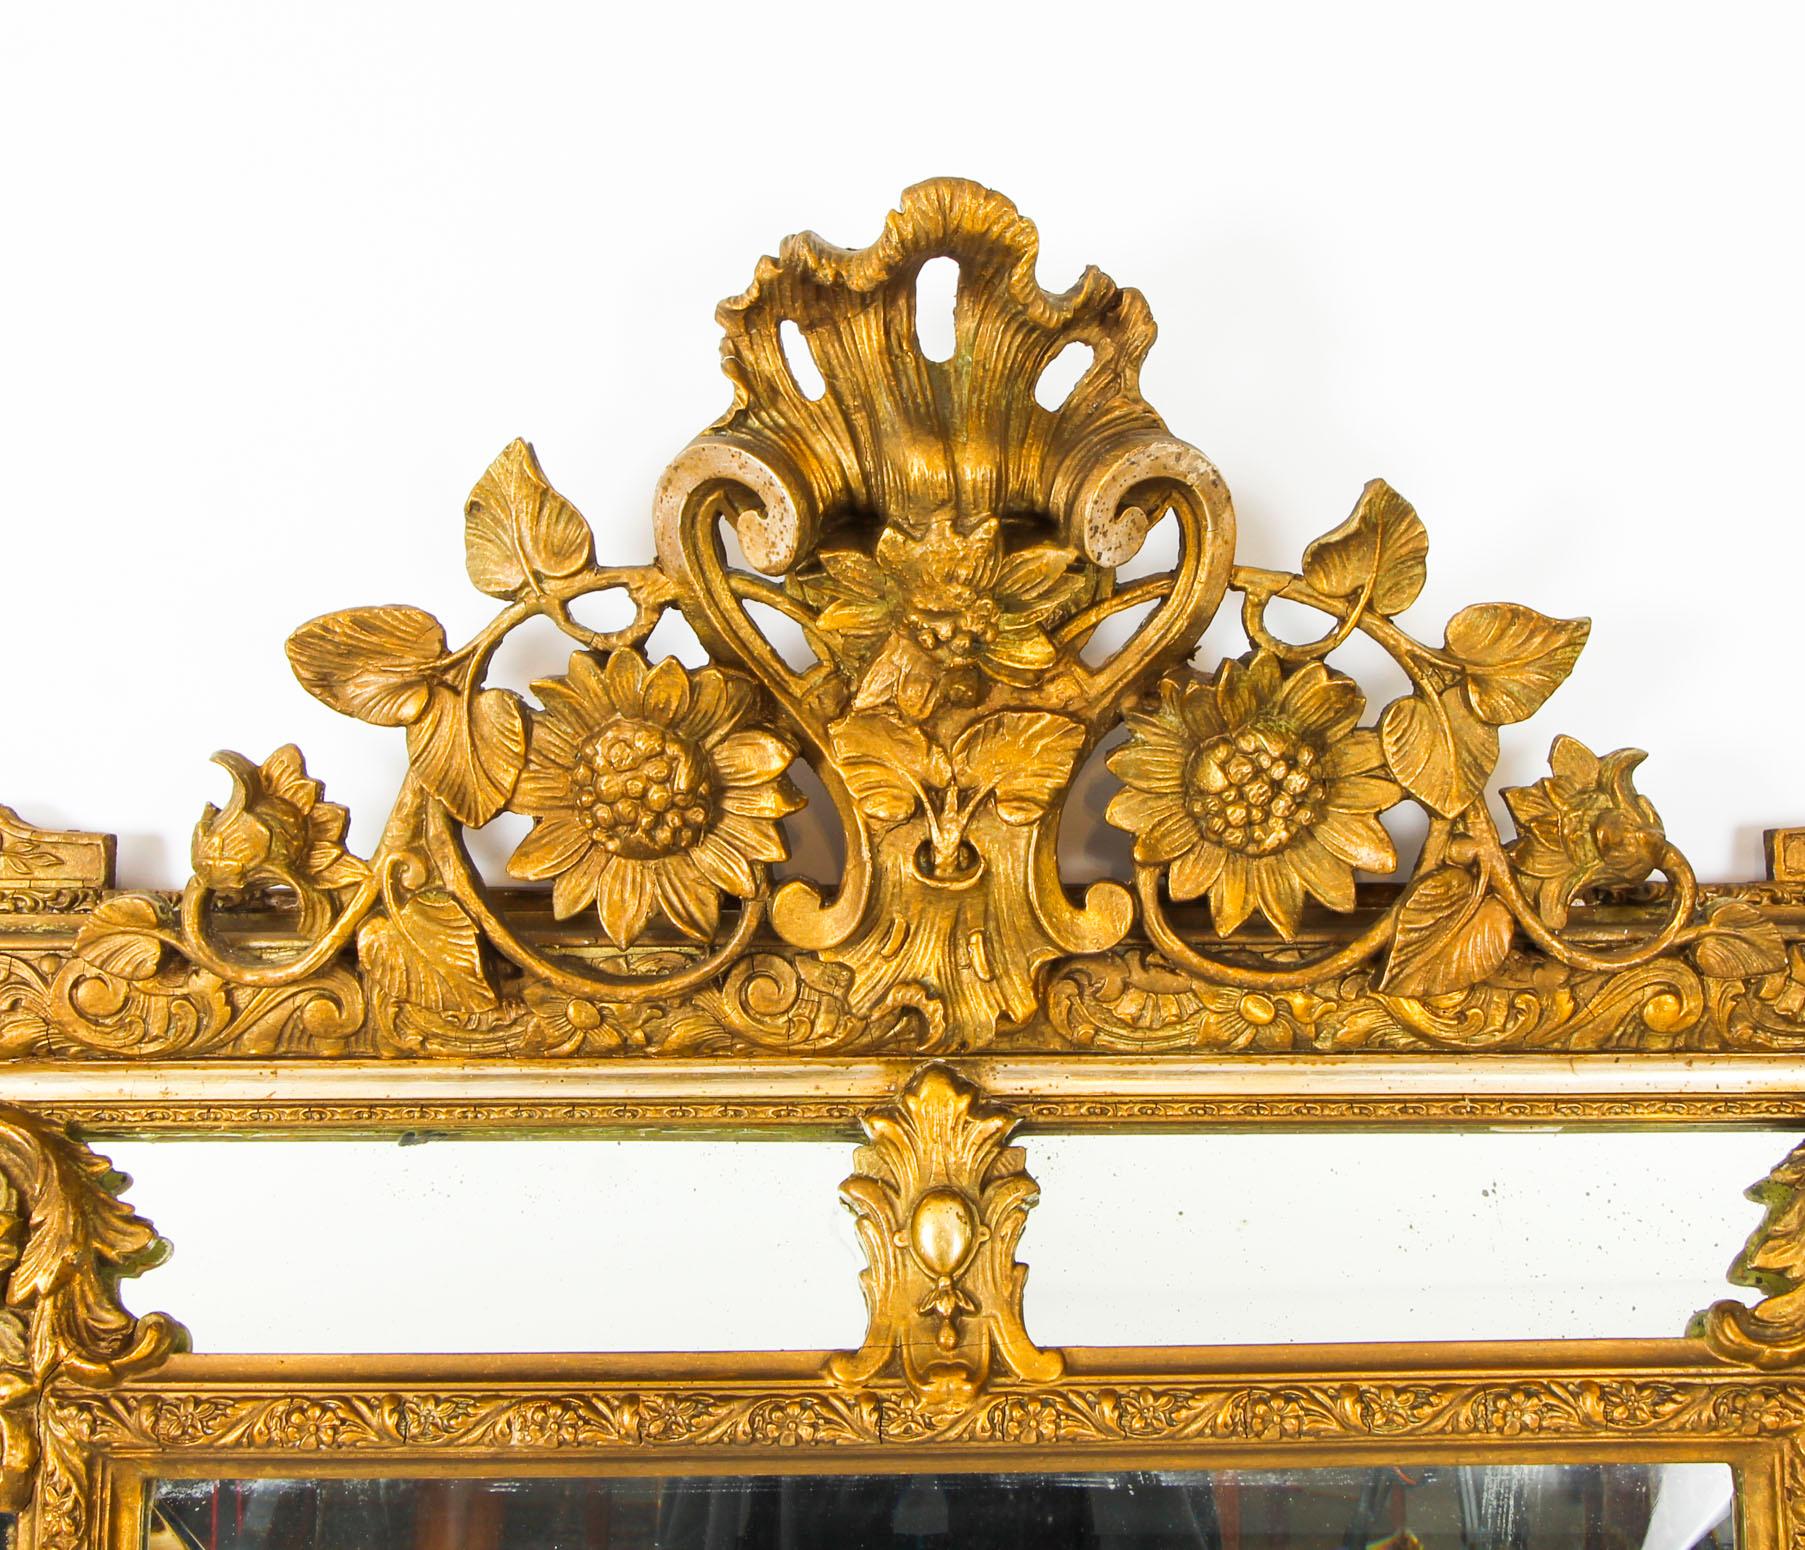 Il s'agit d'un magnifique miroir de cheminée en bois doré de style néo-classique français, datant d'environ 1860.

Le miroir rectangulaire biseauté est encadré par des plaques latérales marginales. Il présente un cadre en bois doré abondamment